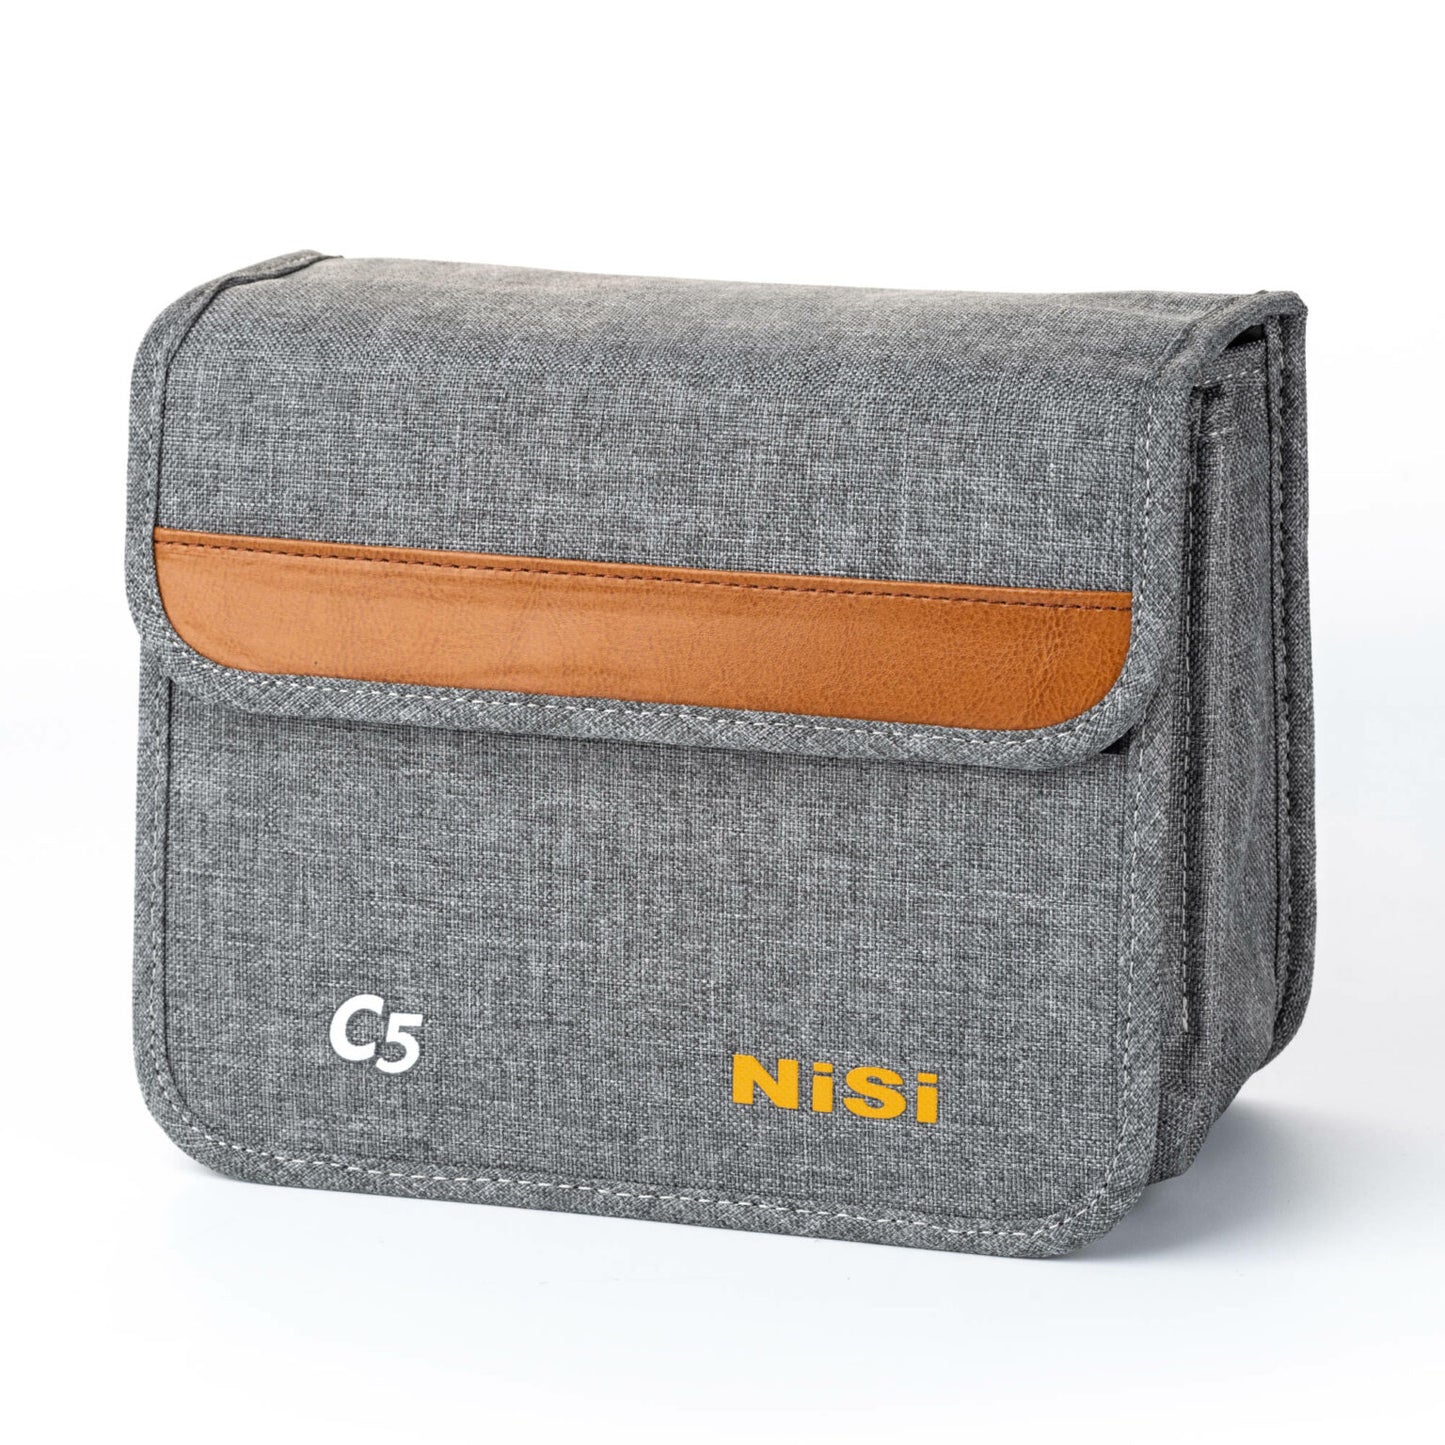 NiSi Cinema C5 Matte Box Starter Kit